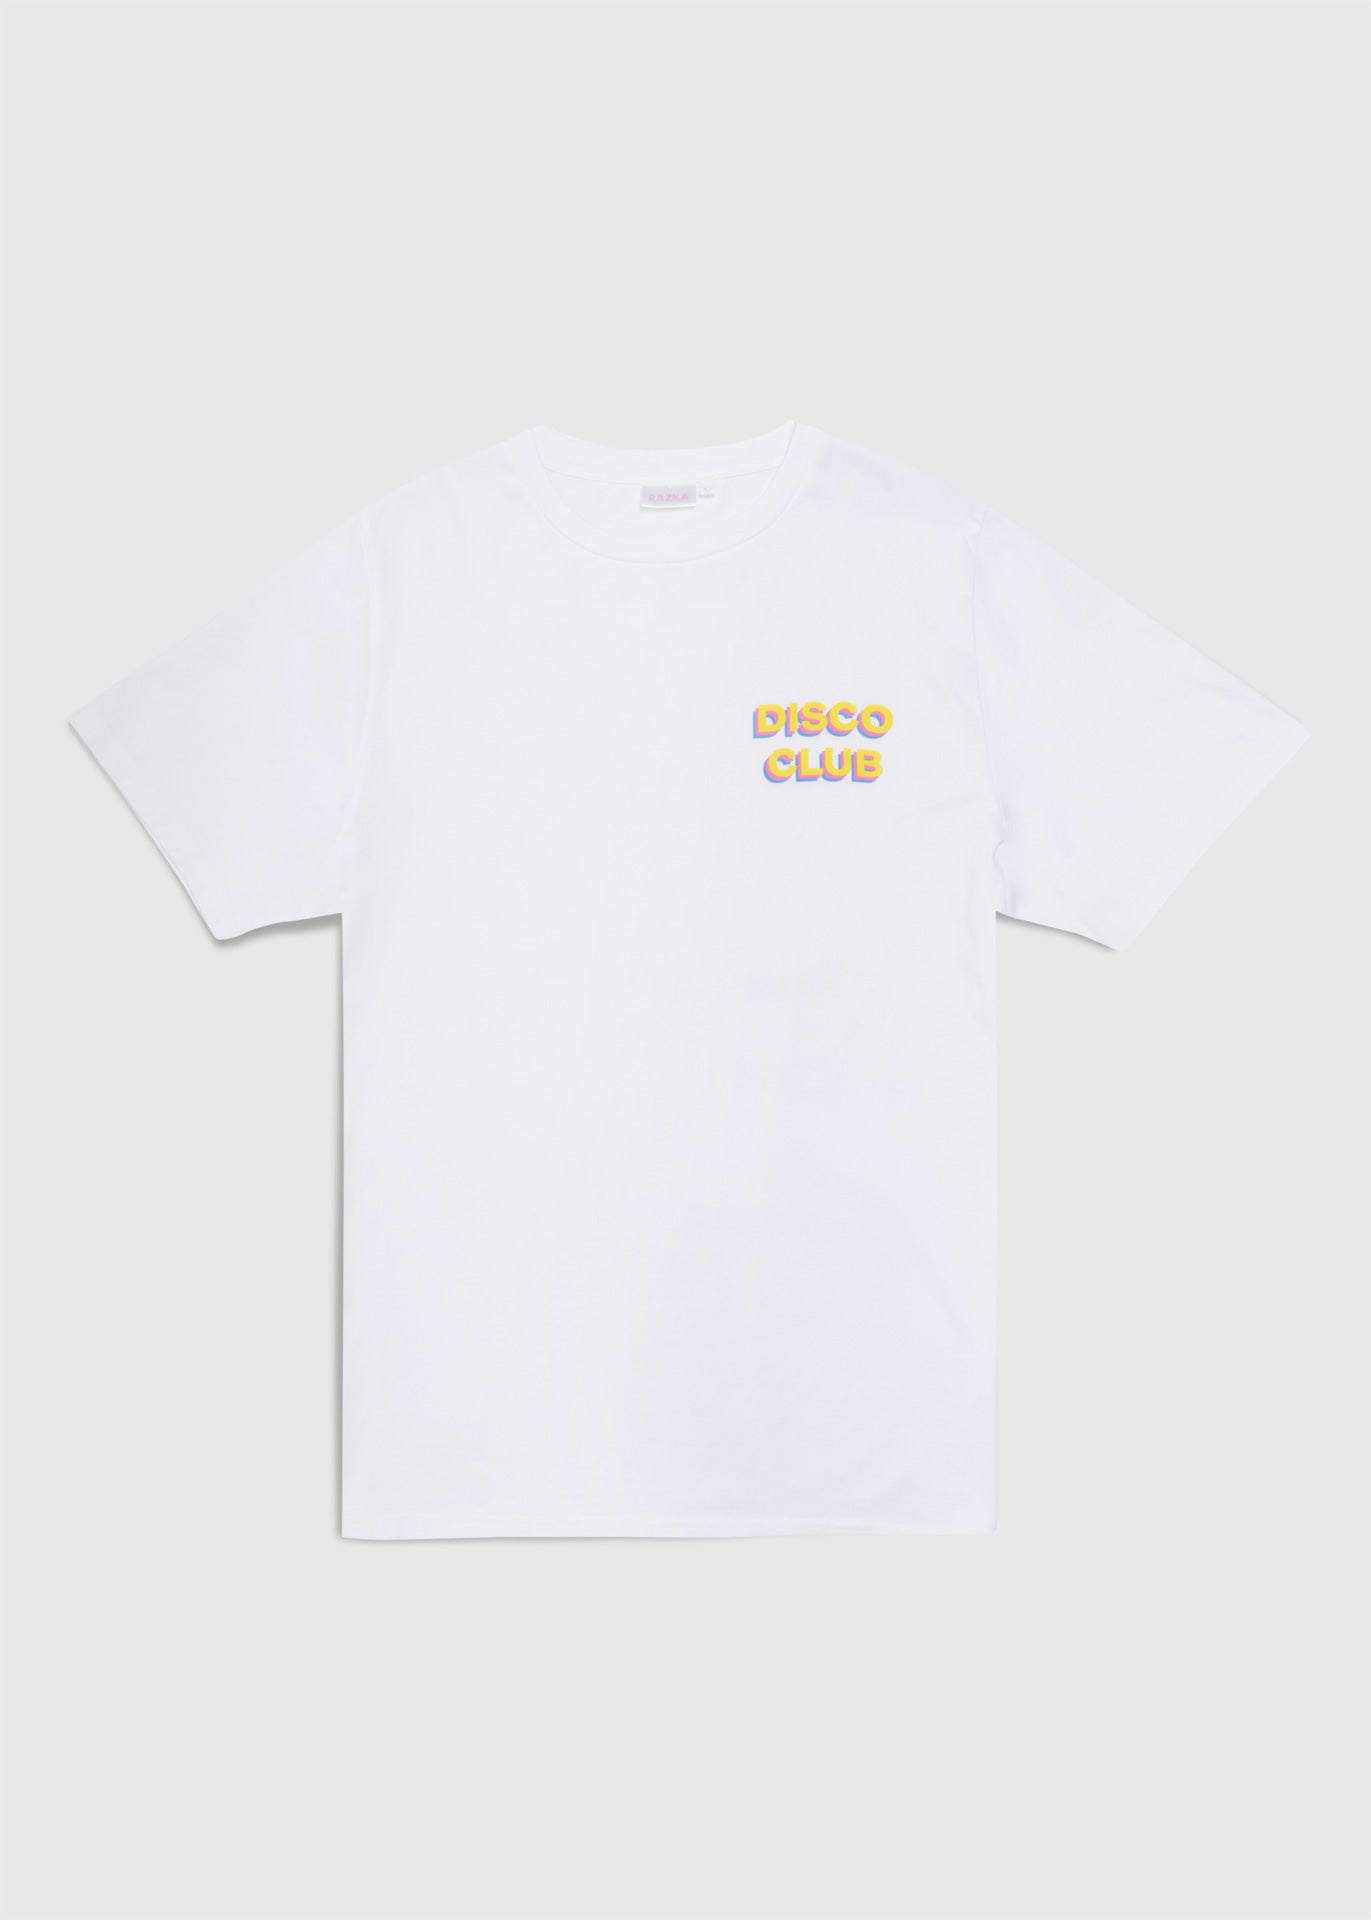 The Disco club t-shirt